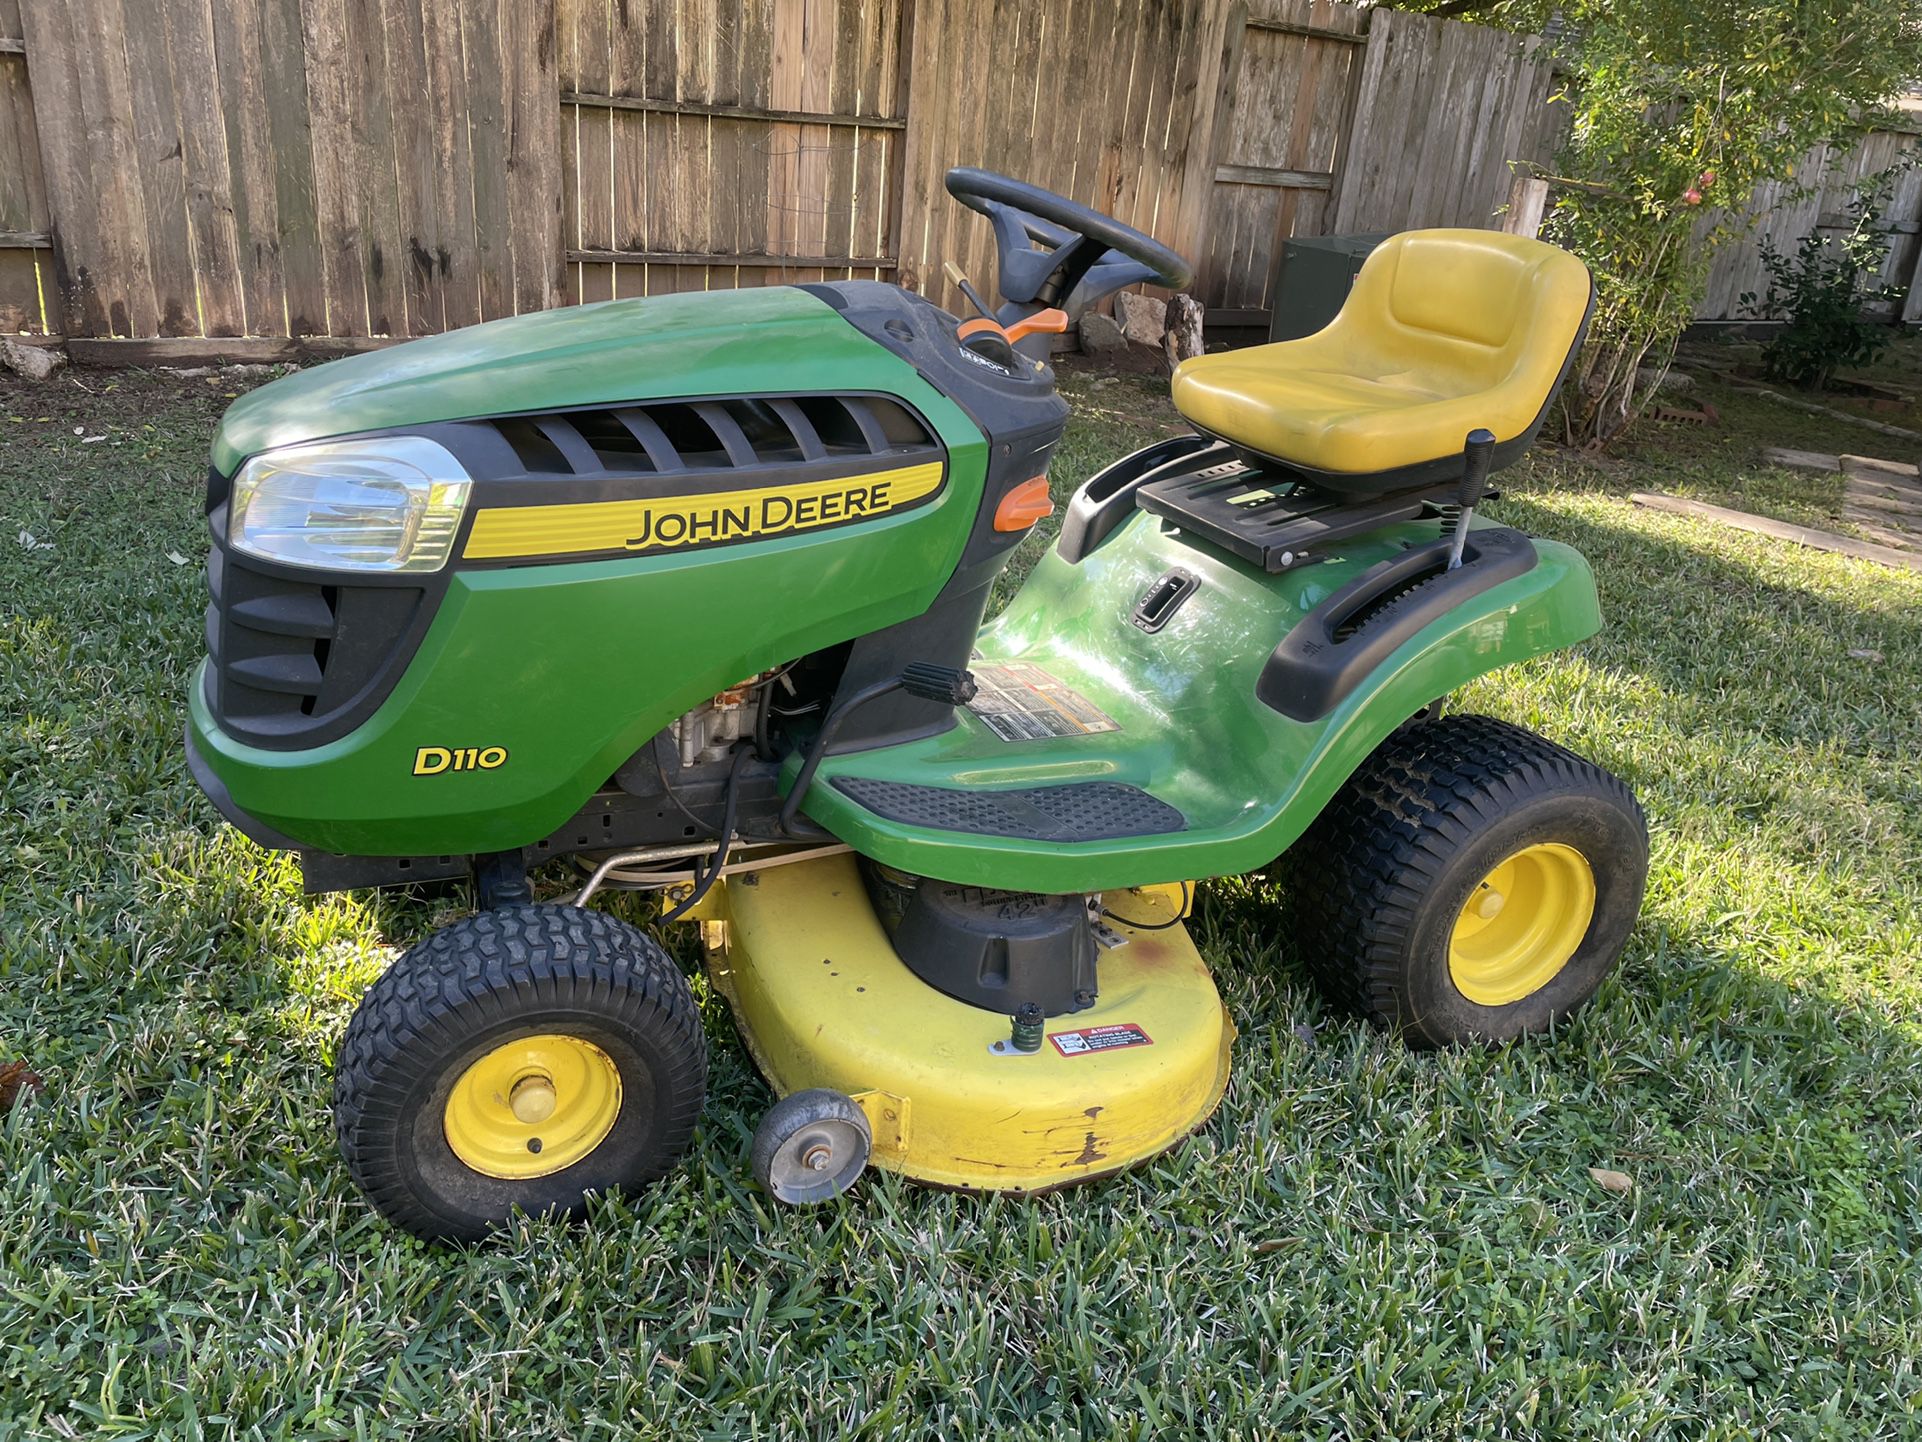 John Deere 42” Riding Lawn Mower D110